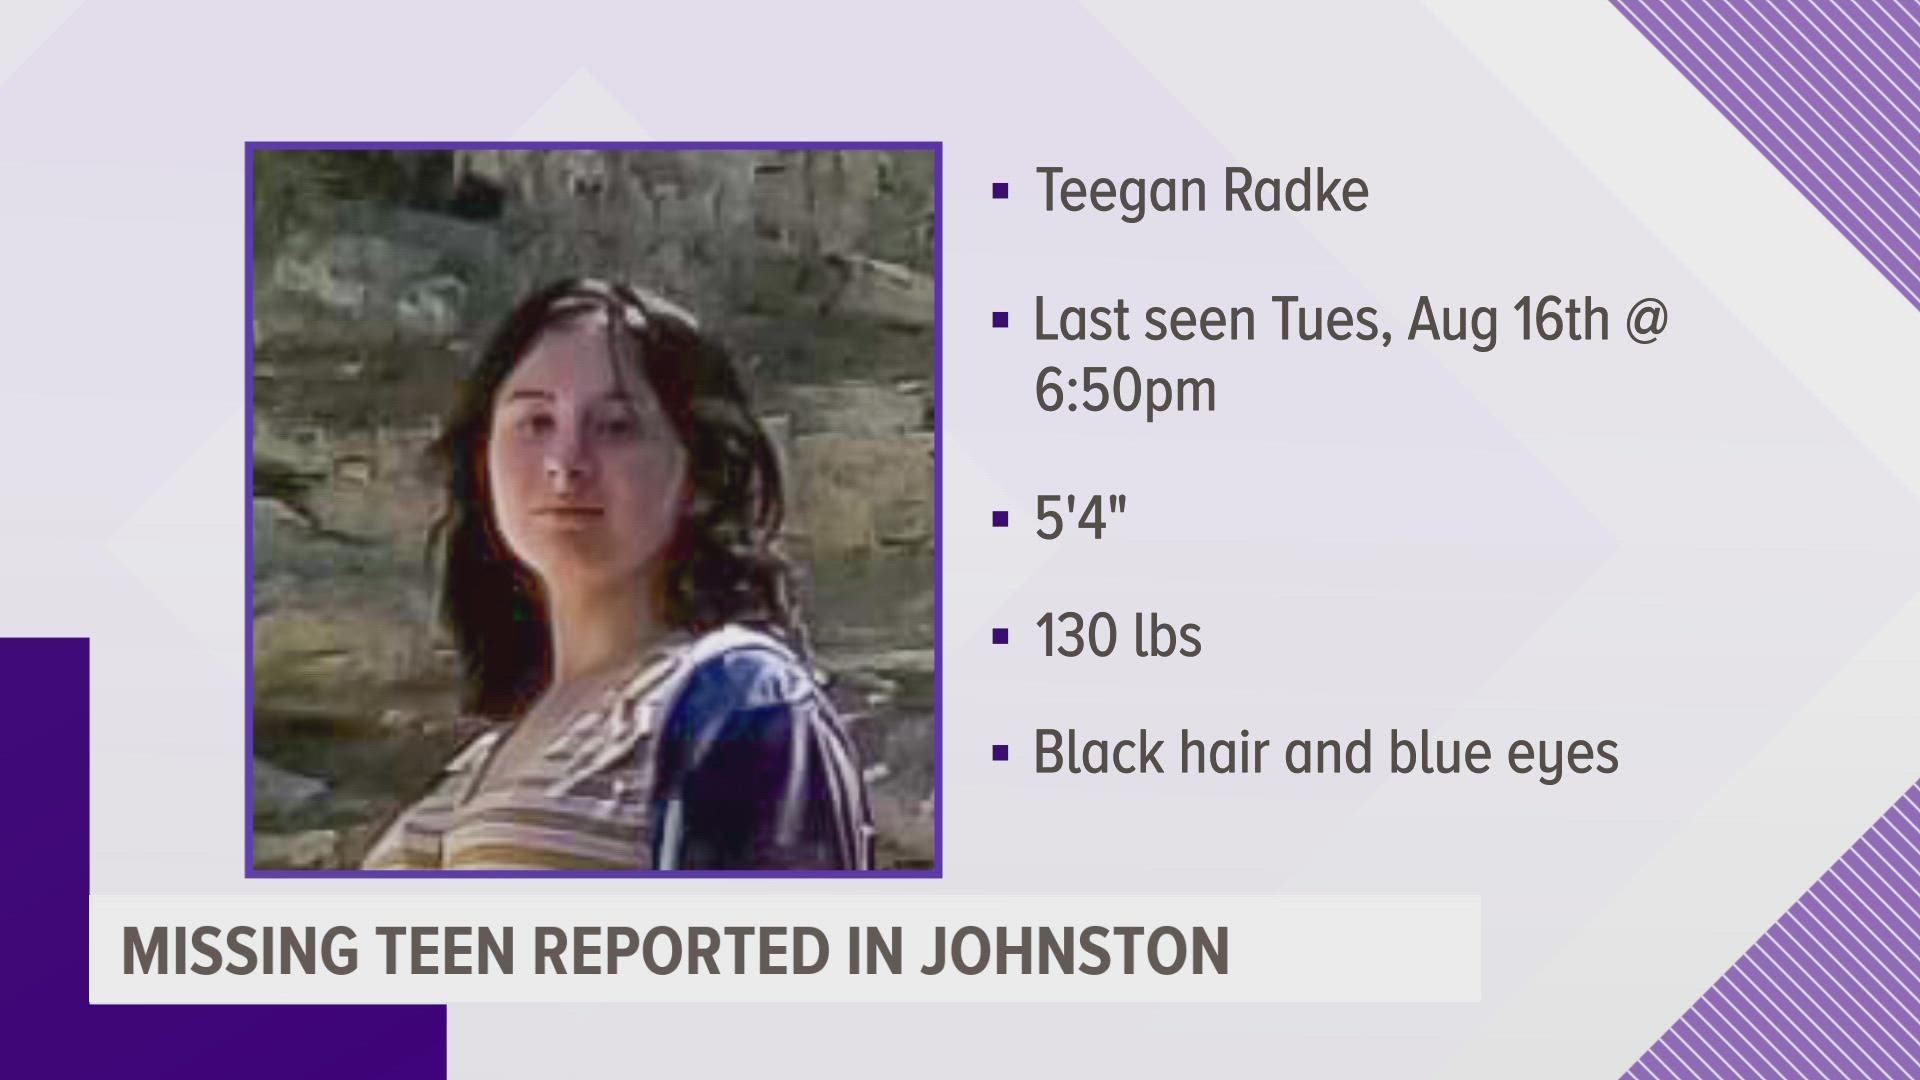 Police say Teegan Radke was last seen Tuesday night.